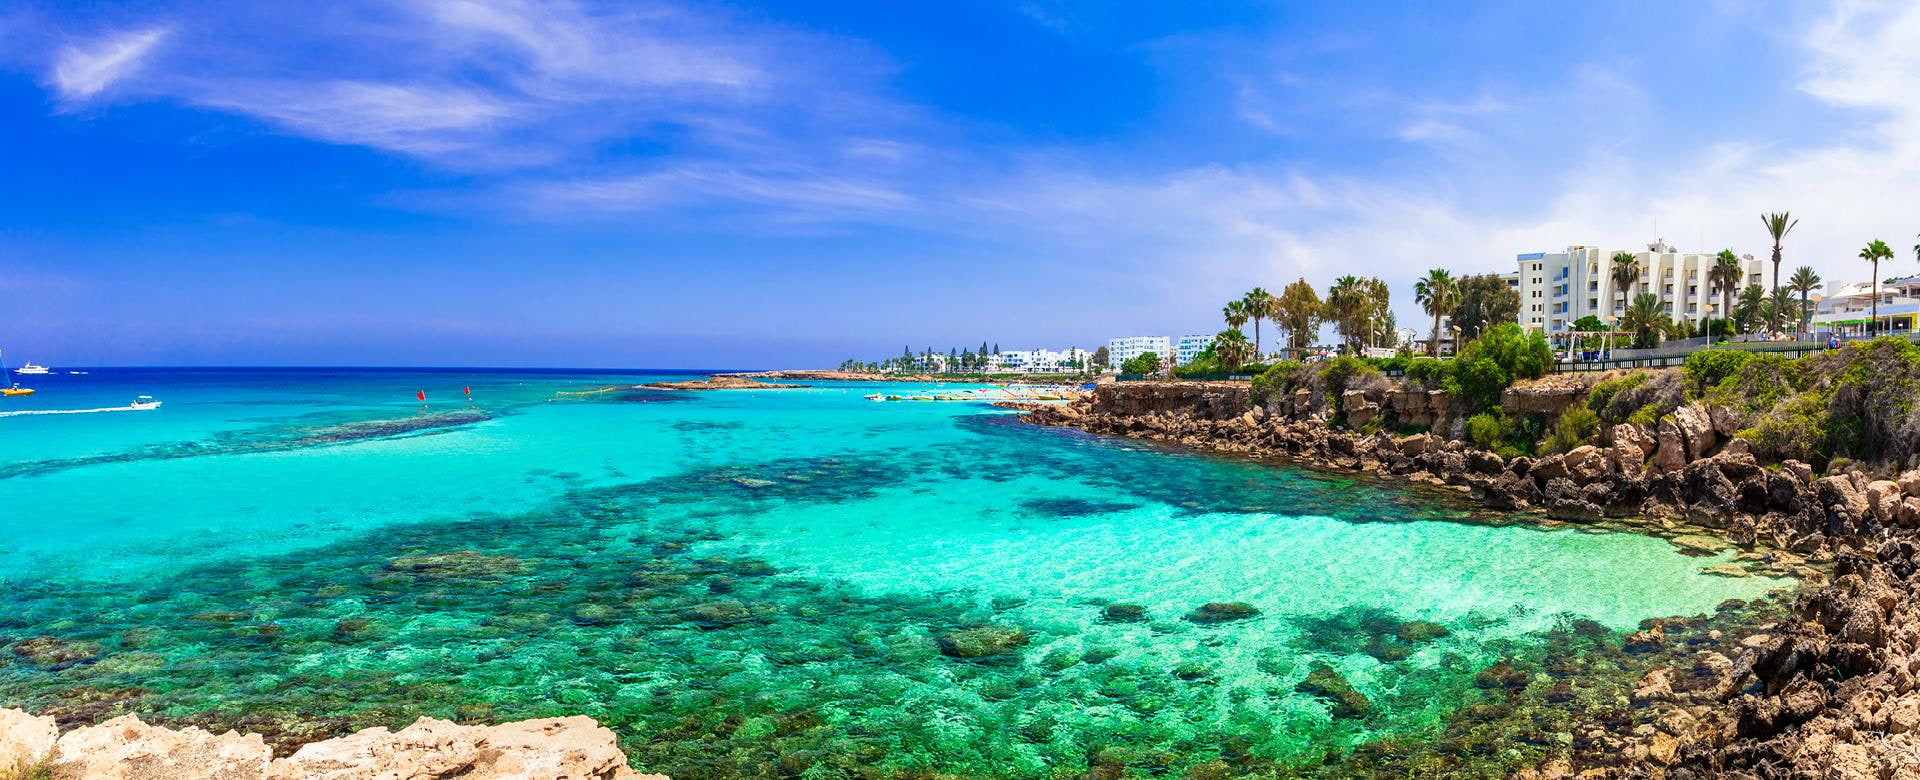 Sommerurlaub auf Zypern Insel. Protaras, Feigenbaumbucht